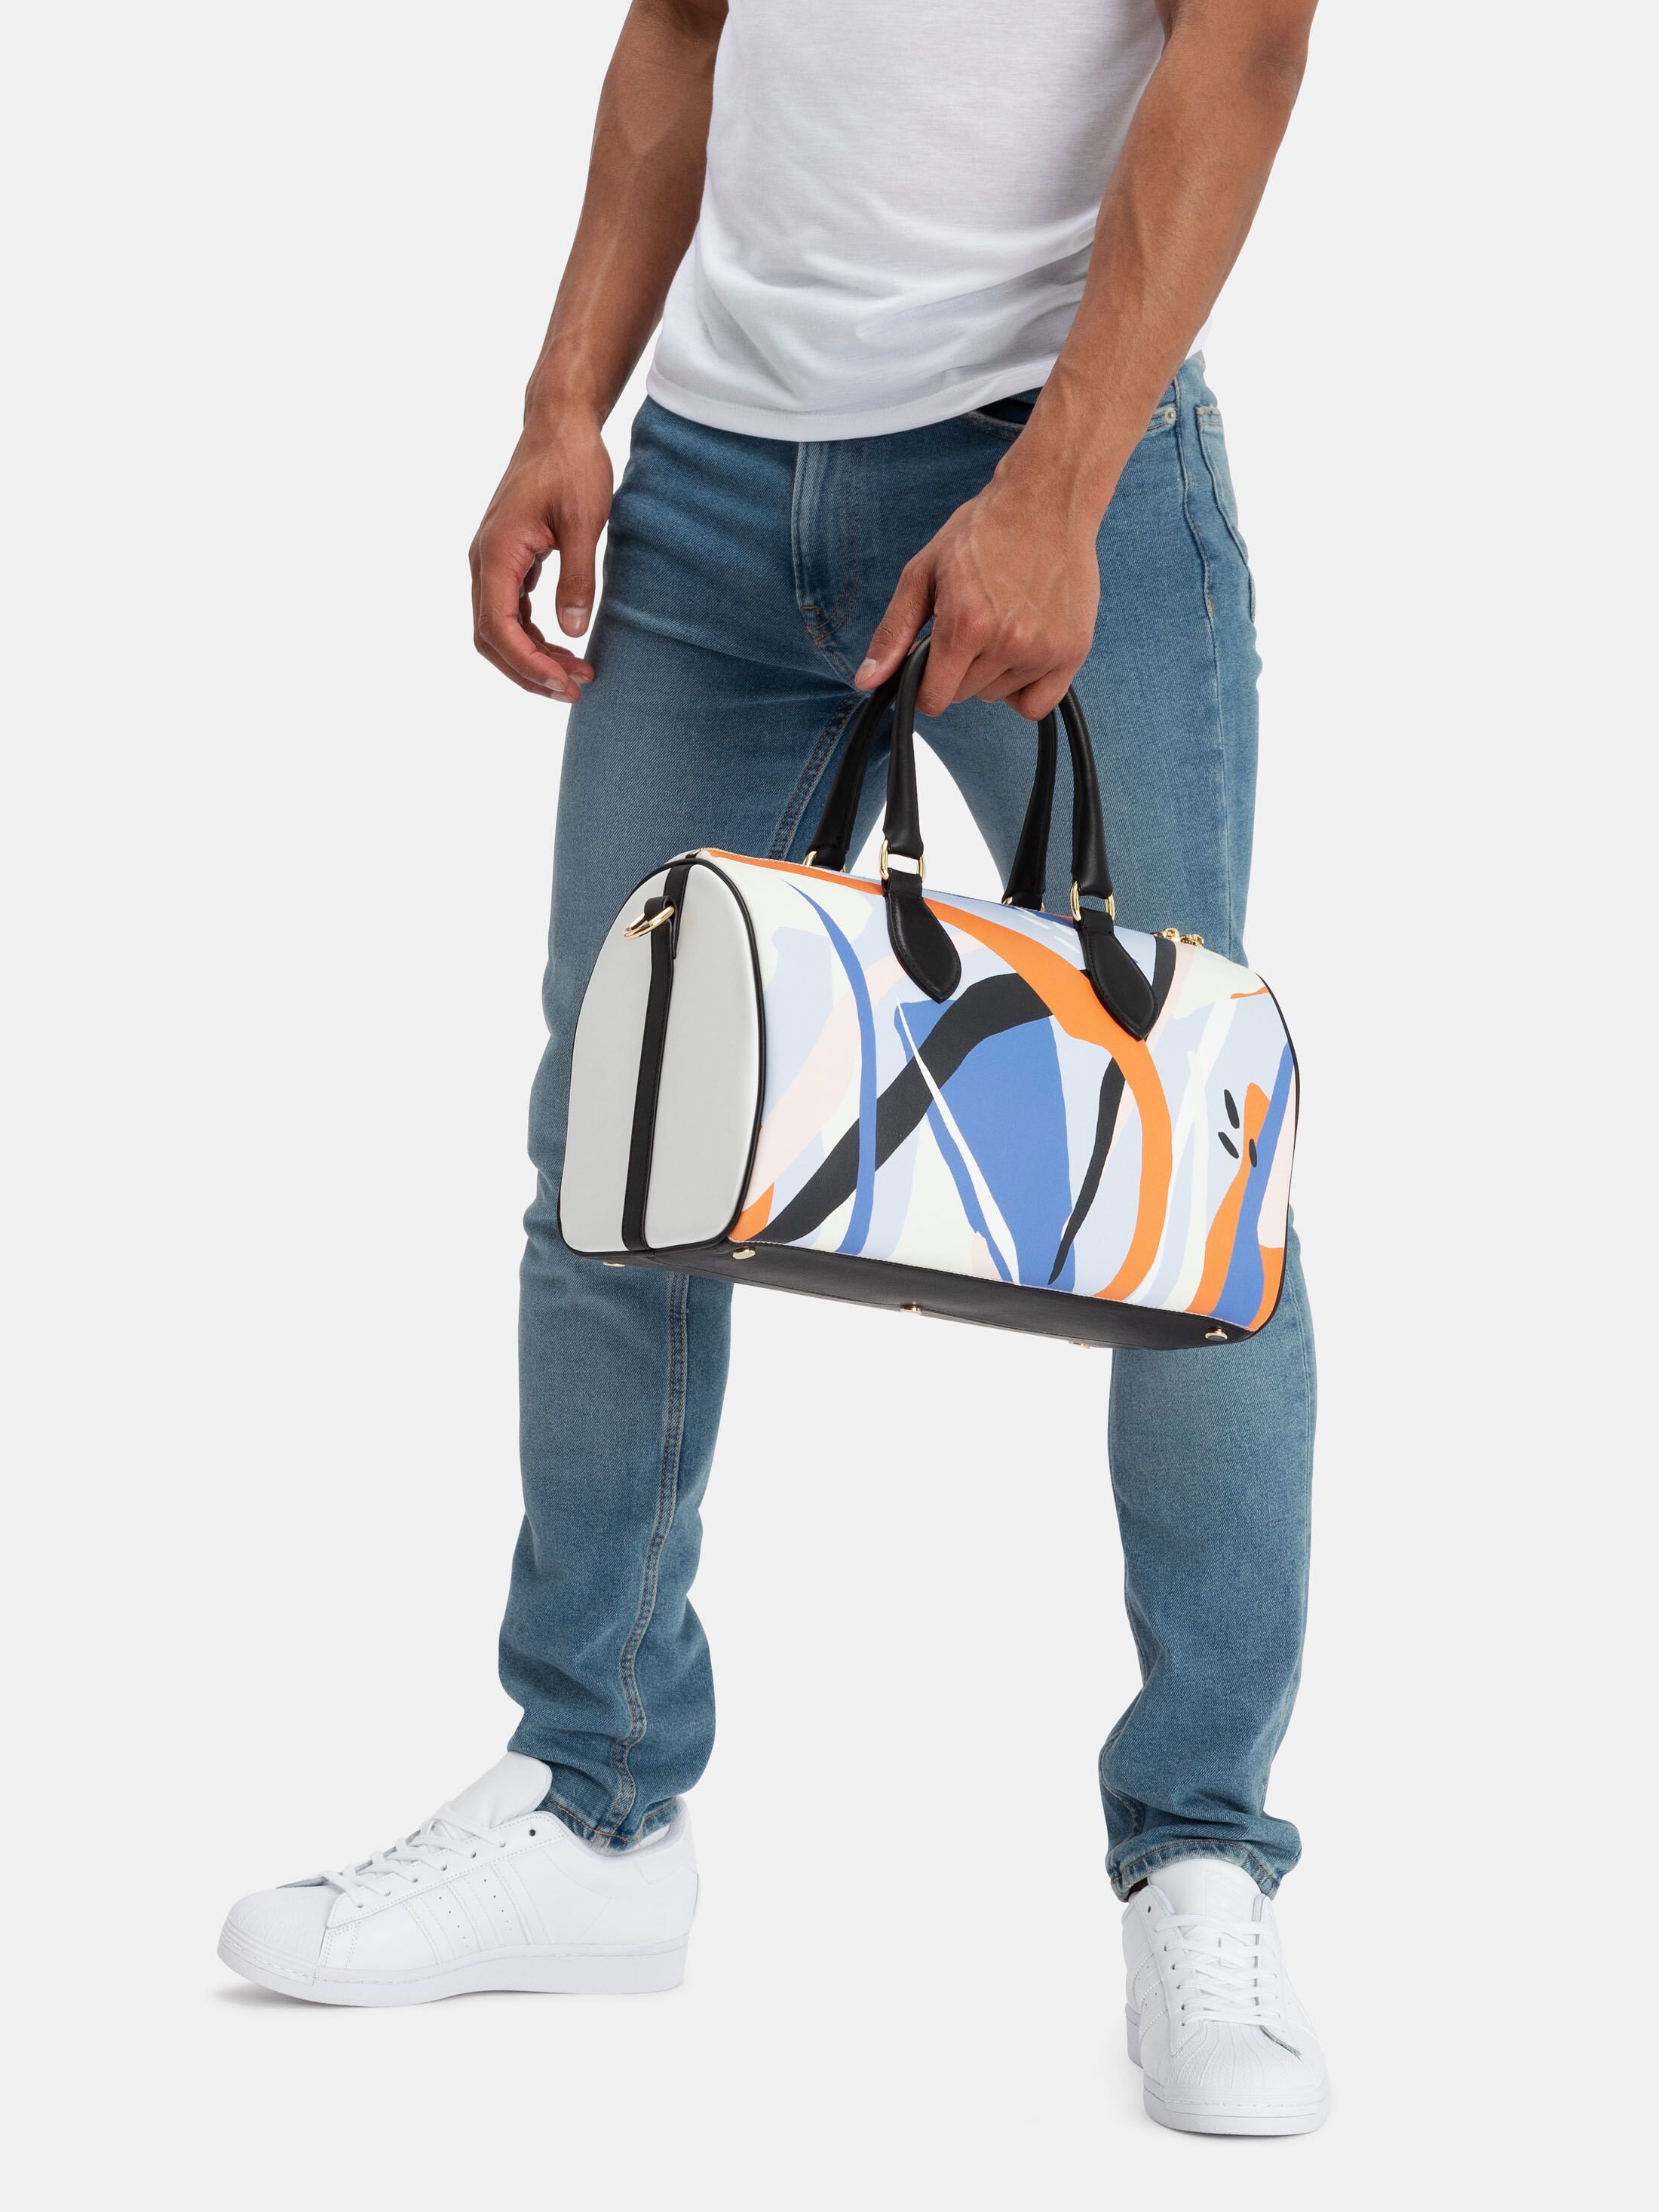 ontwerp jouw eigen duffel bag